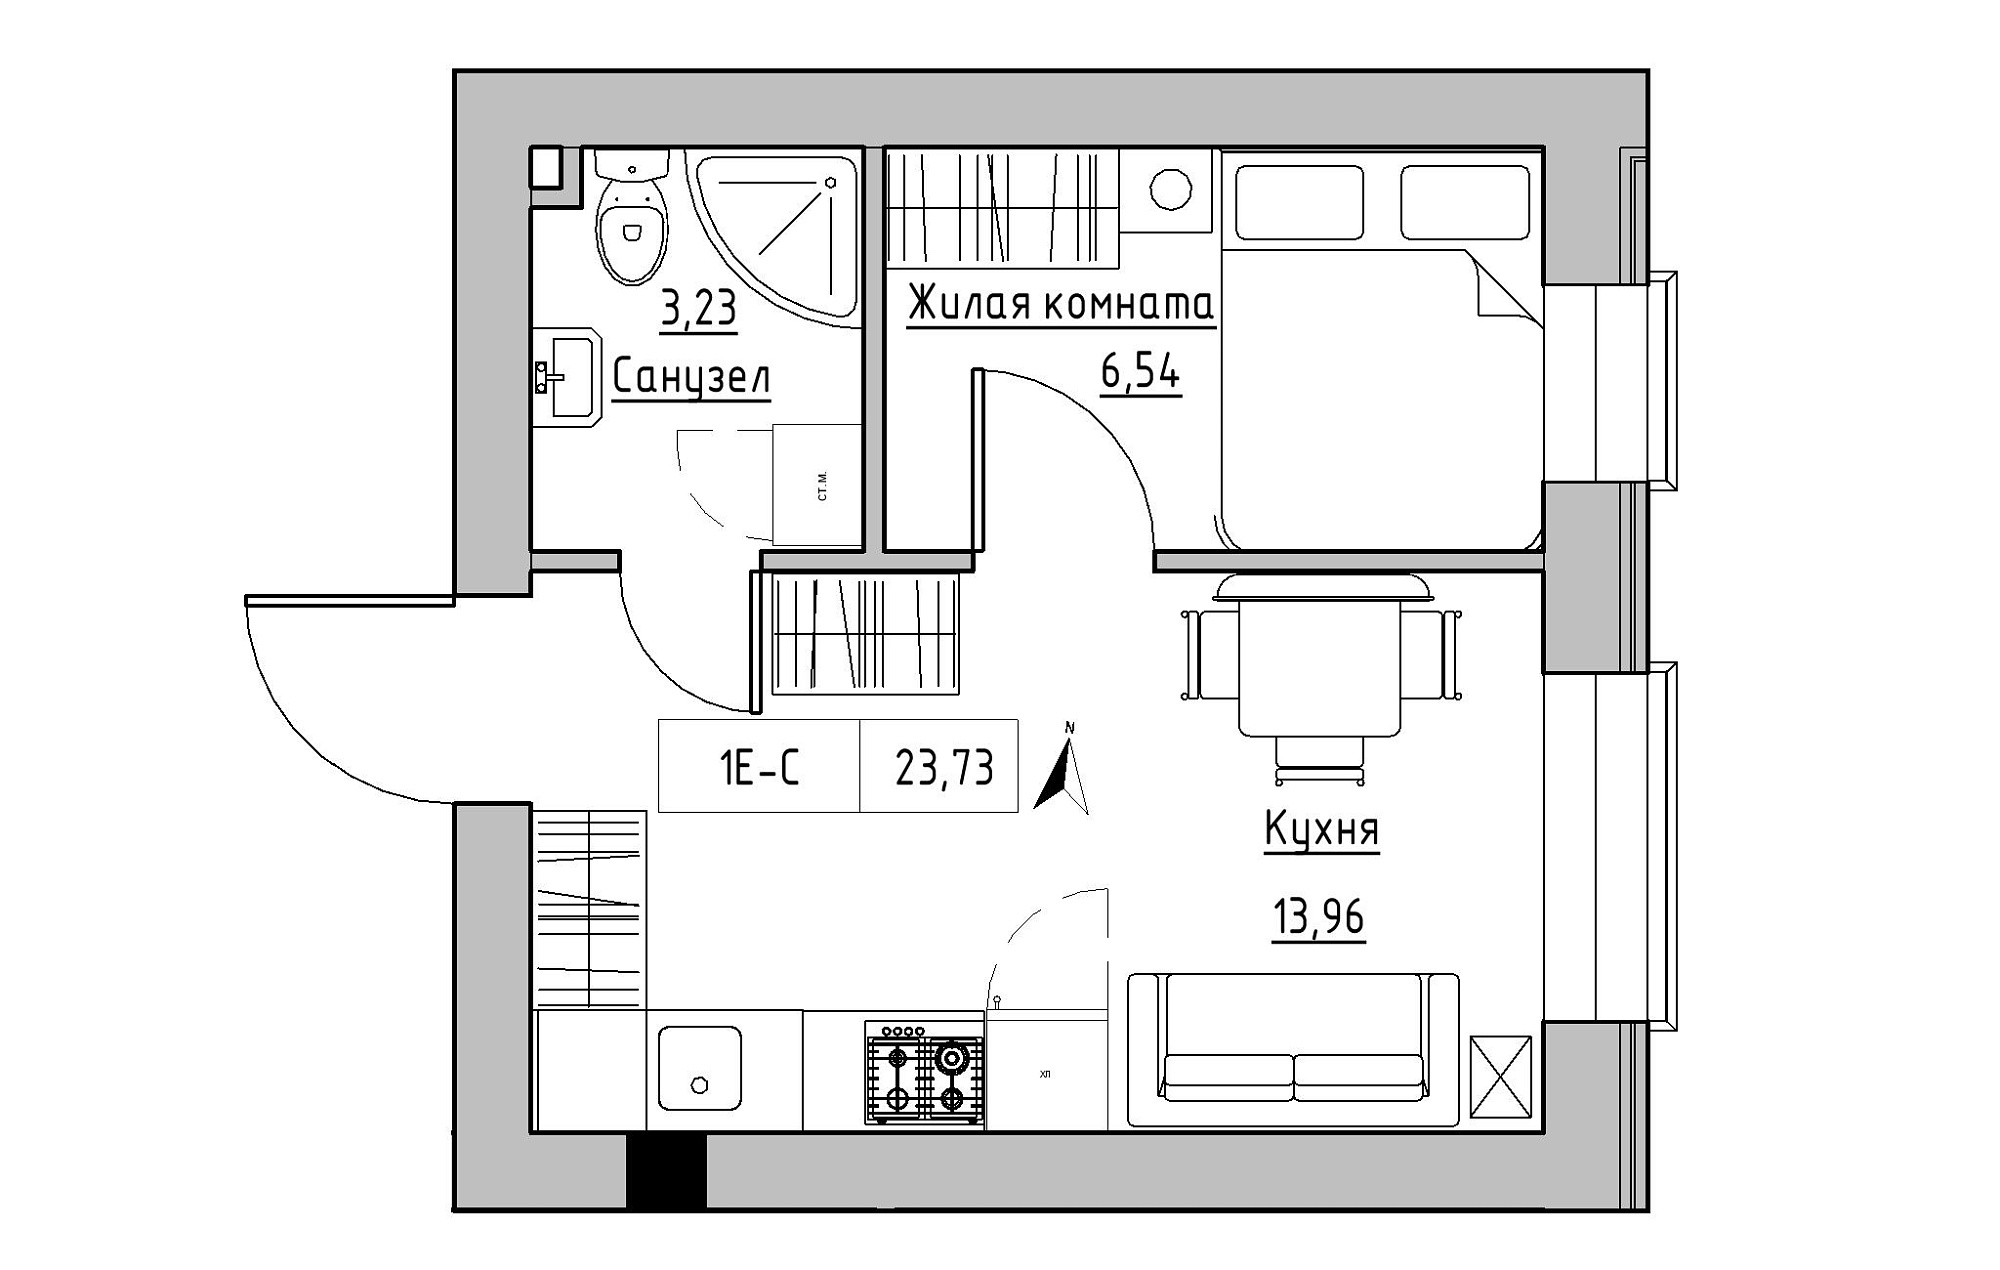 Планування 1-к квартира площею 23.73м2, KS-019-01/0007.